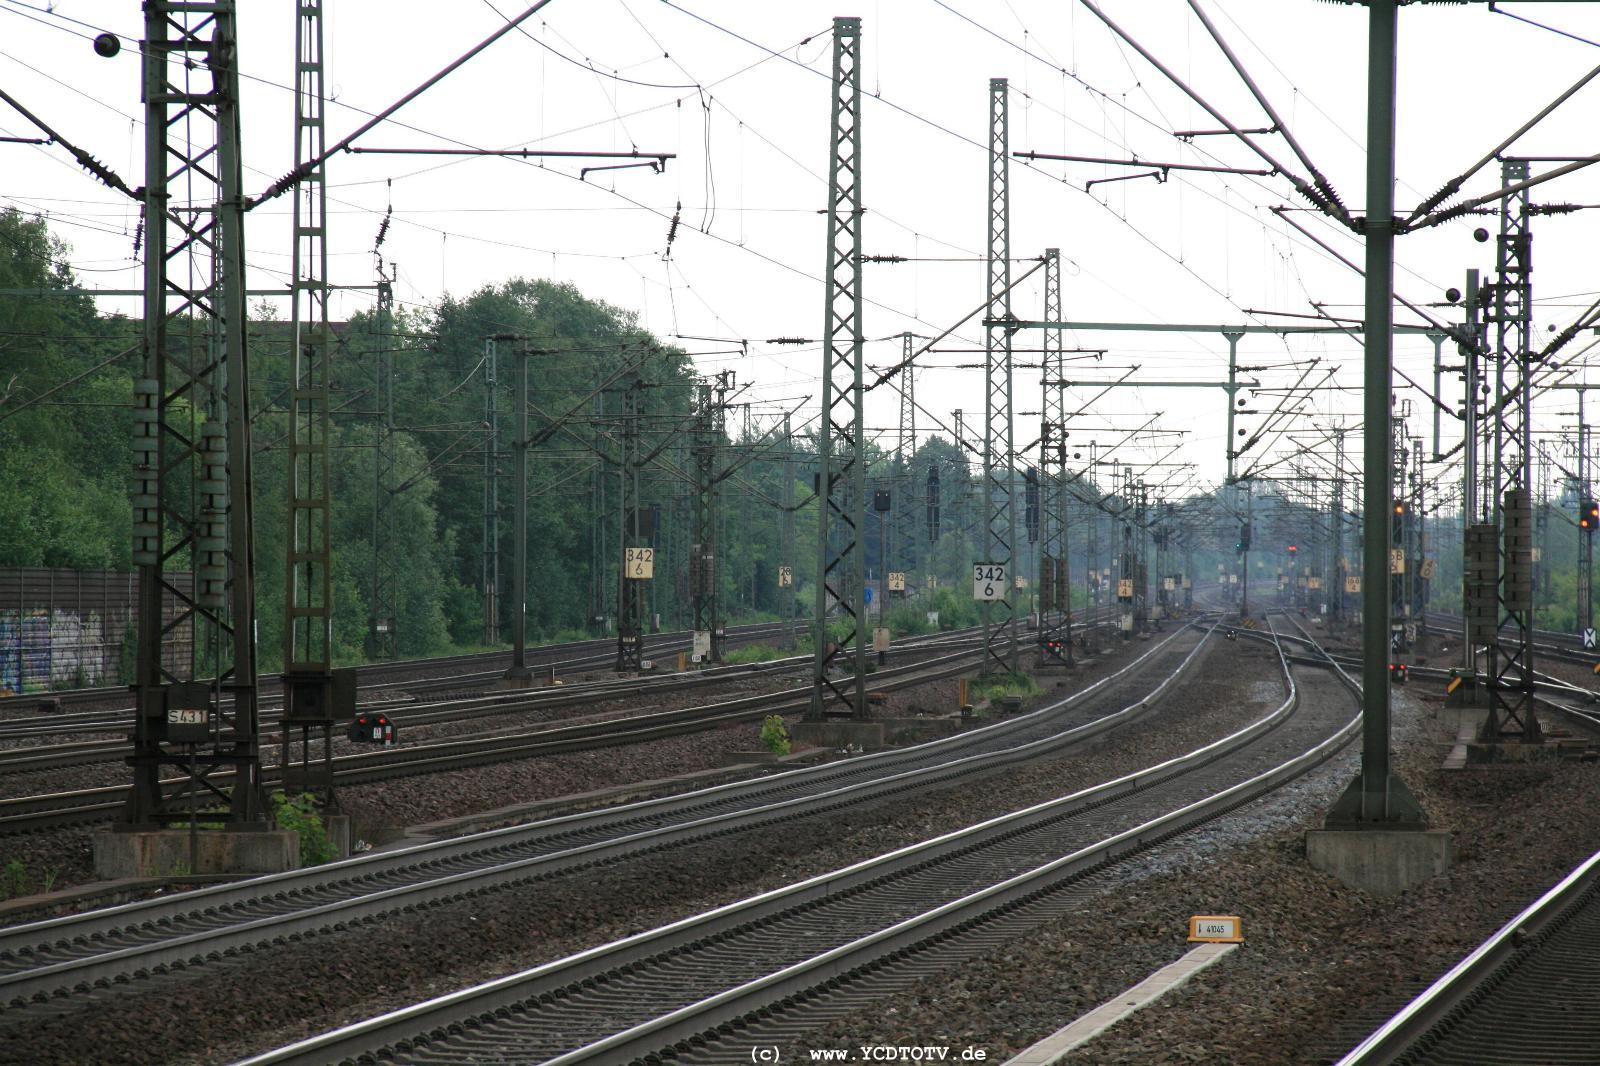  Bahnhof Hamburg-Harburg, 18.05.2011, Blick vom Bahnsteig 5 Richtung Sden 